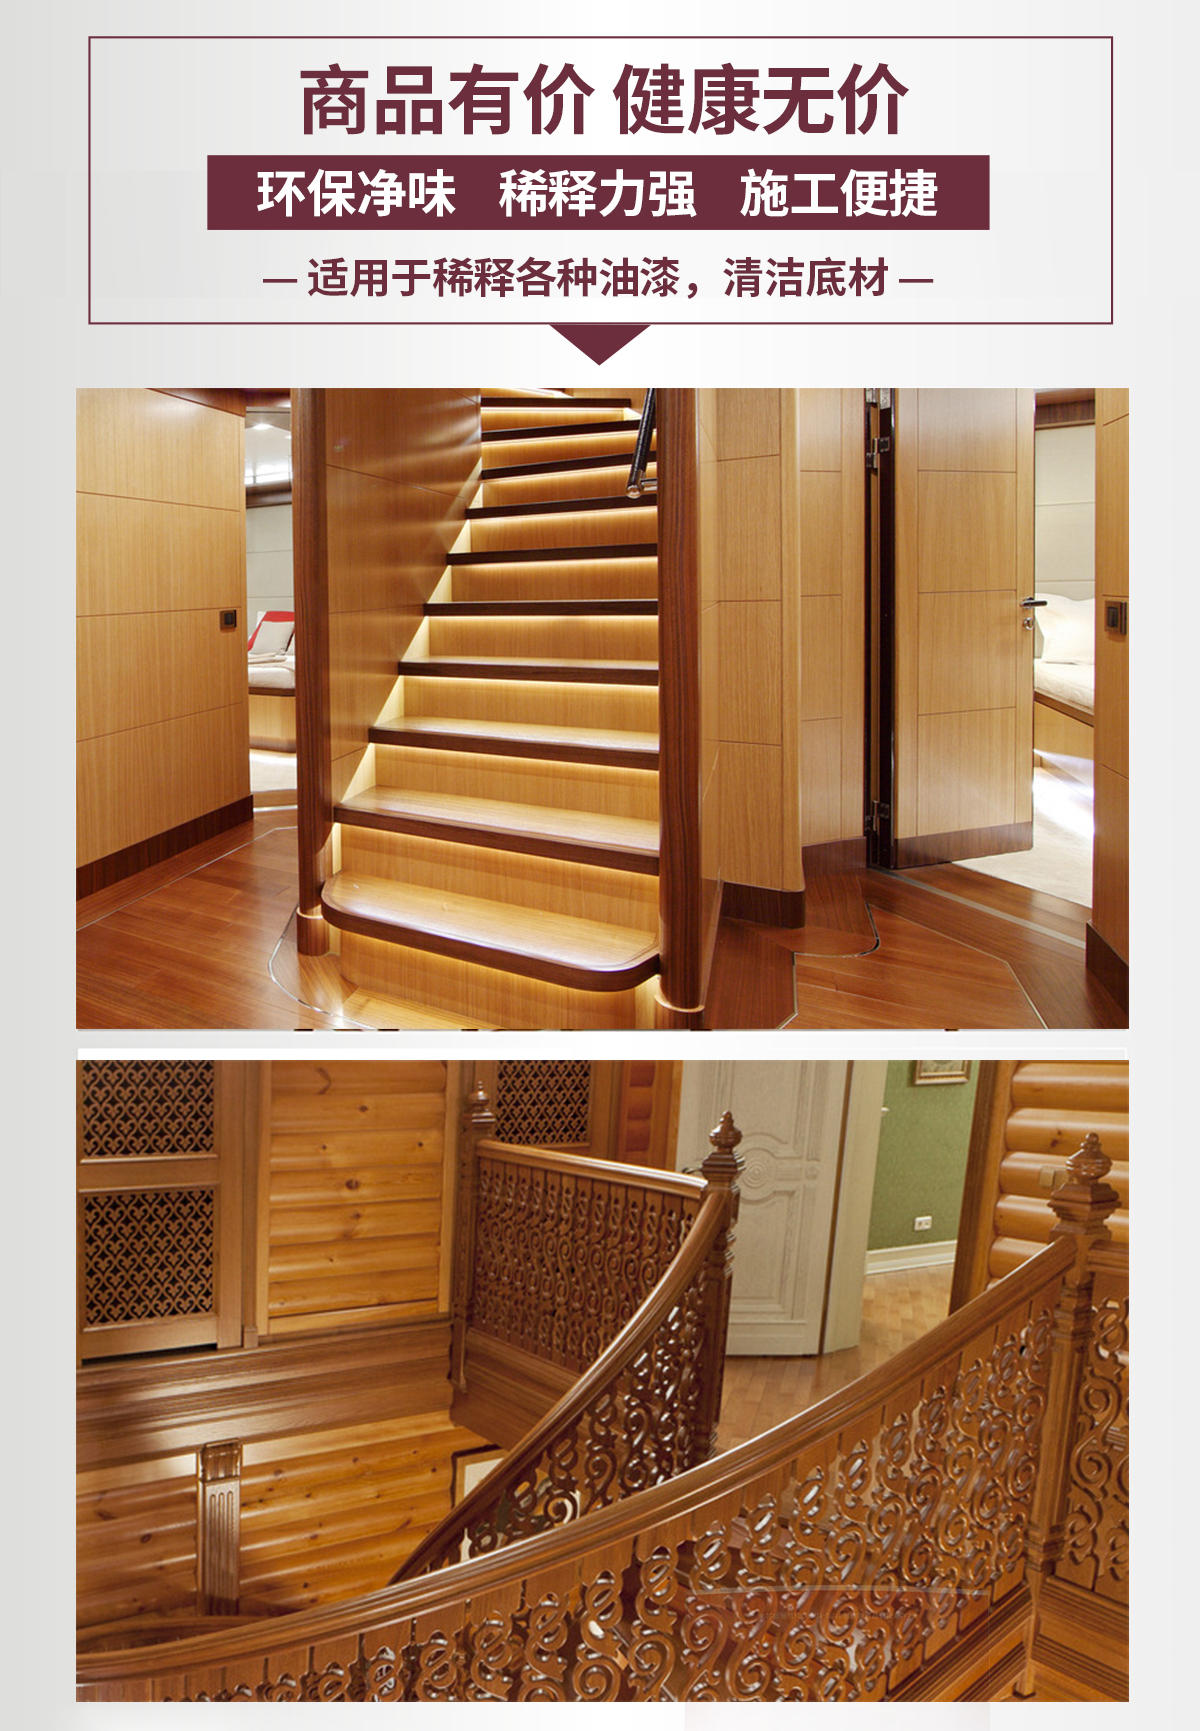 米妮高檔樓梯系列家具漆-長圖詳情頁_11.jpg